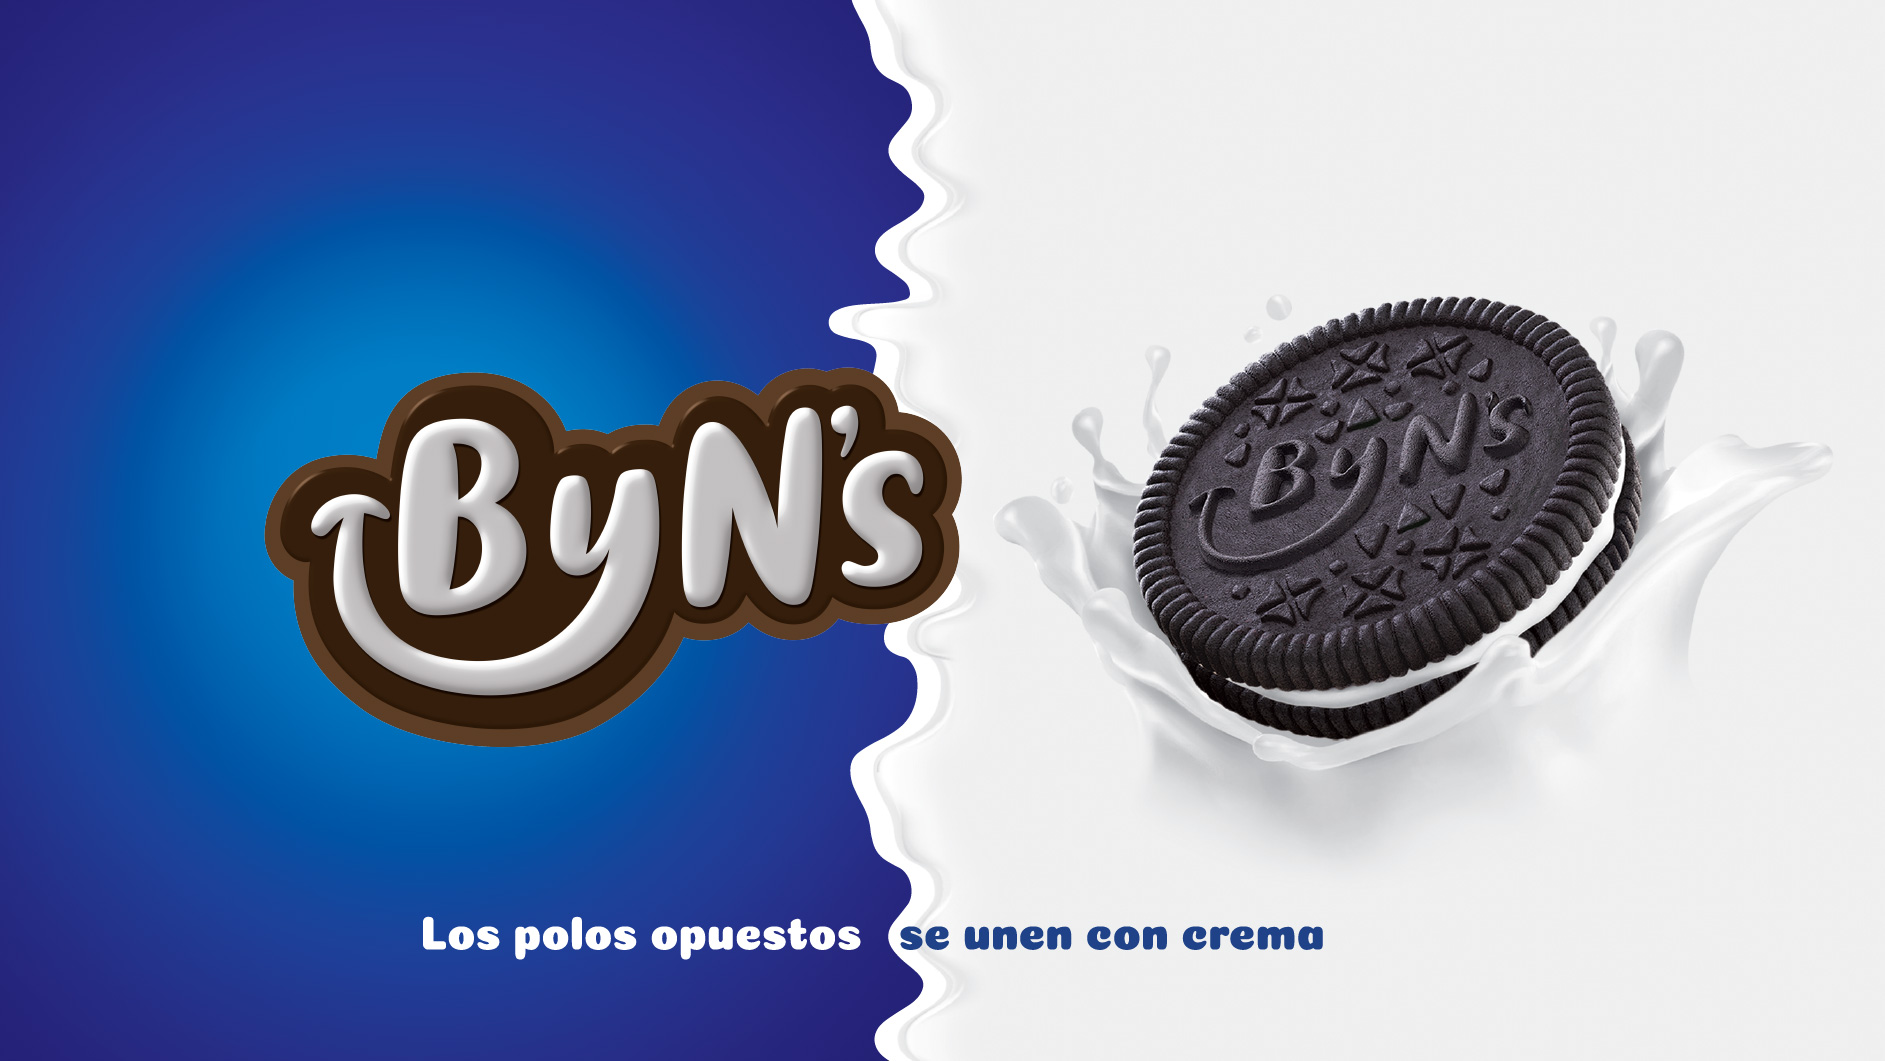 Creación de marca y empaques de galletas. Diseño de logo. Diseño gráfico Colombia.